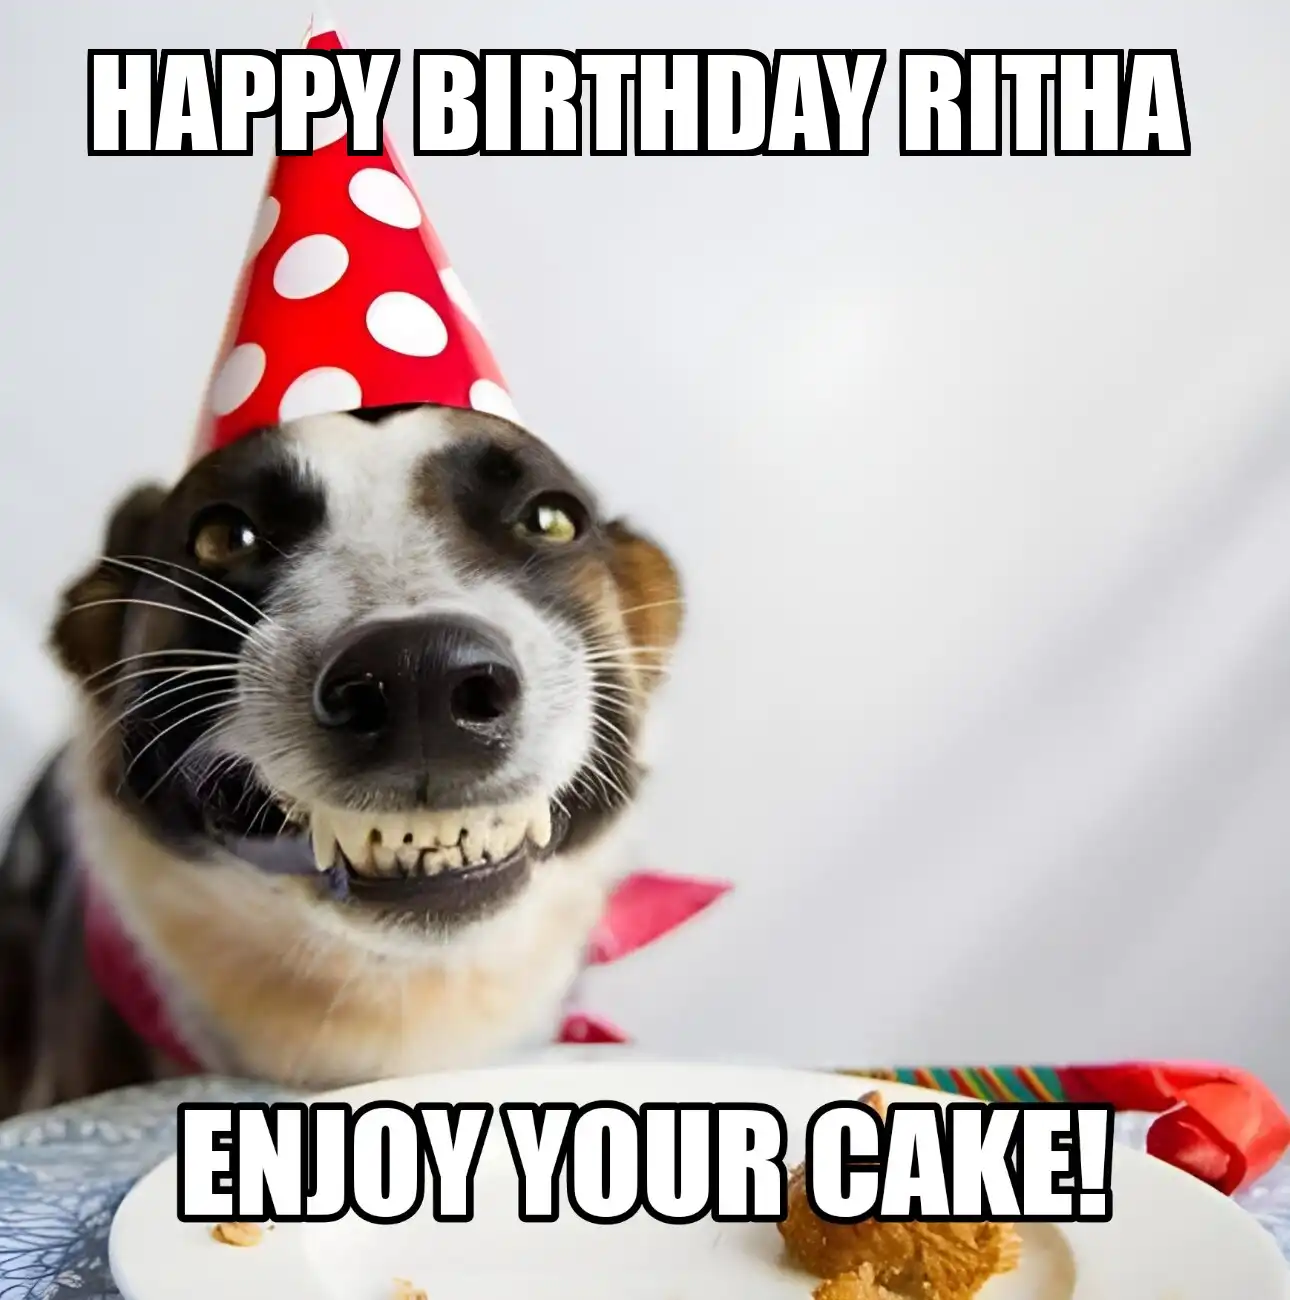 Happy Birthday Ritha Enjoy Your Cake Dog Meme